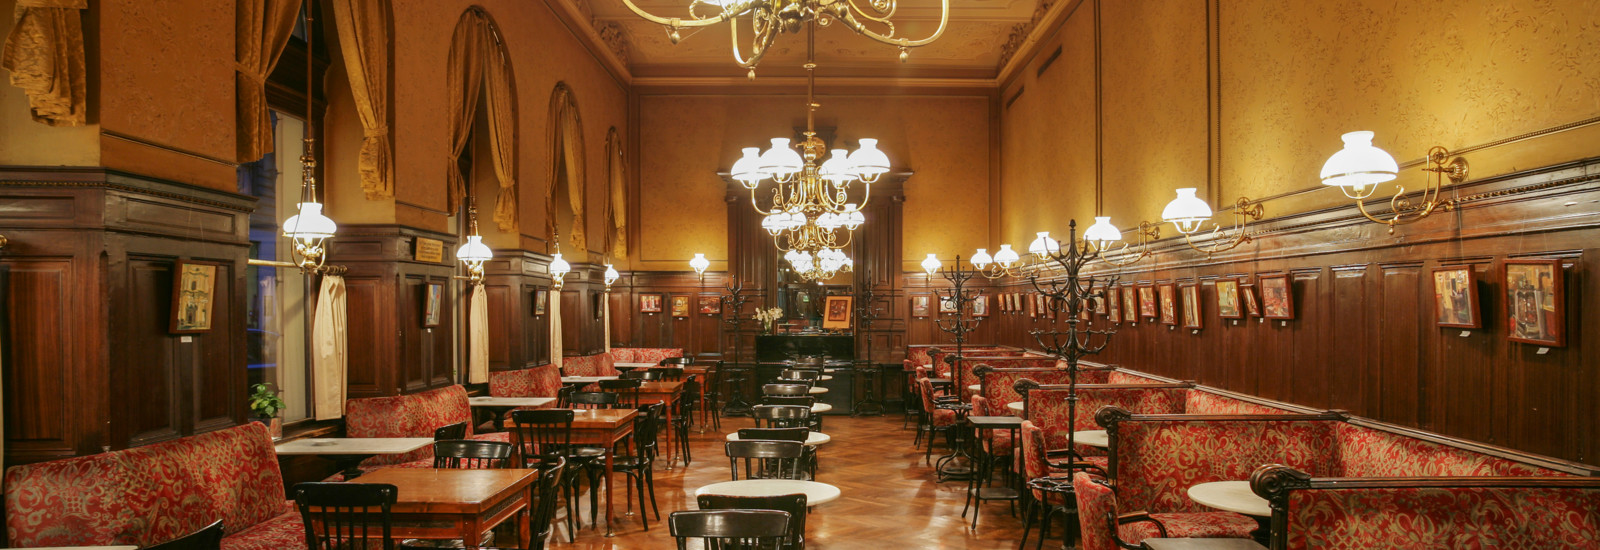 Sacher eröffnet erstes Café außerhalb Österreichs - Falstaff